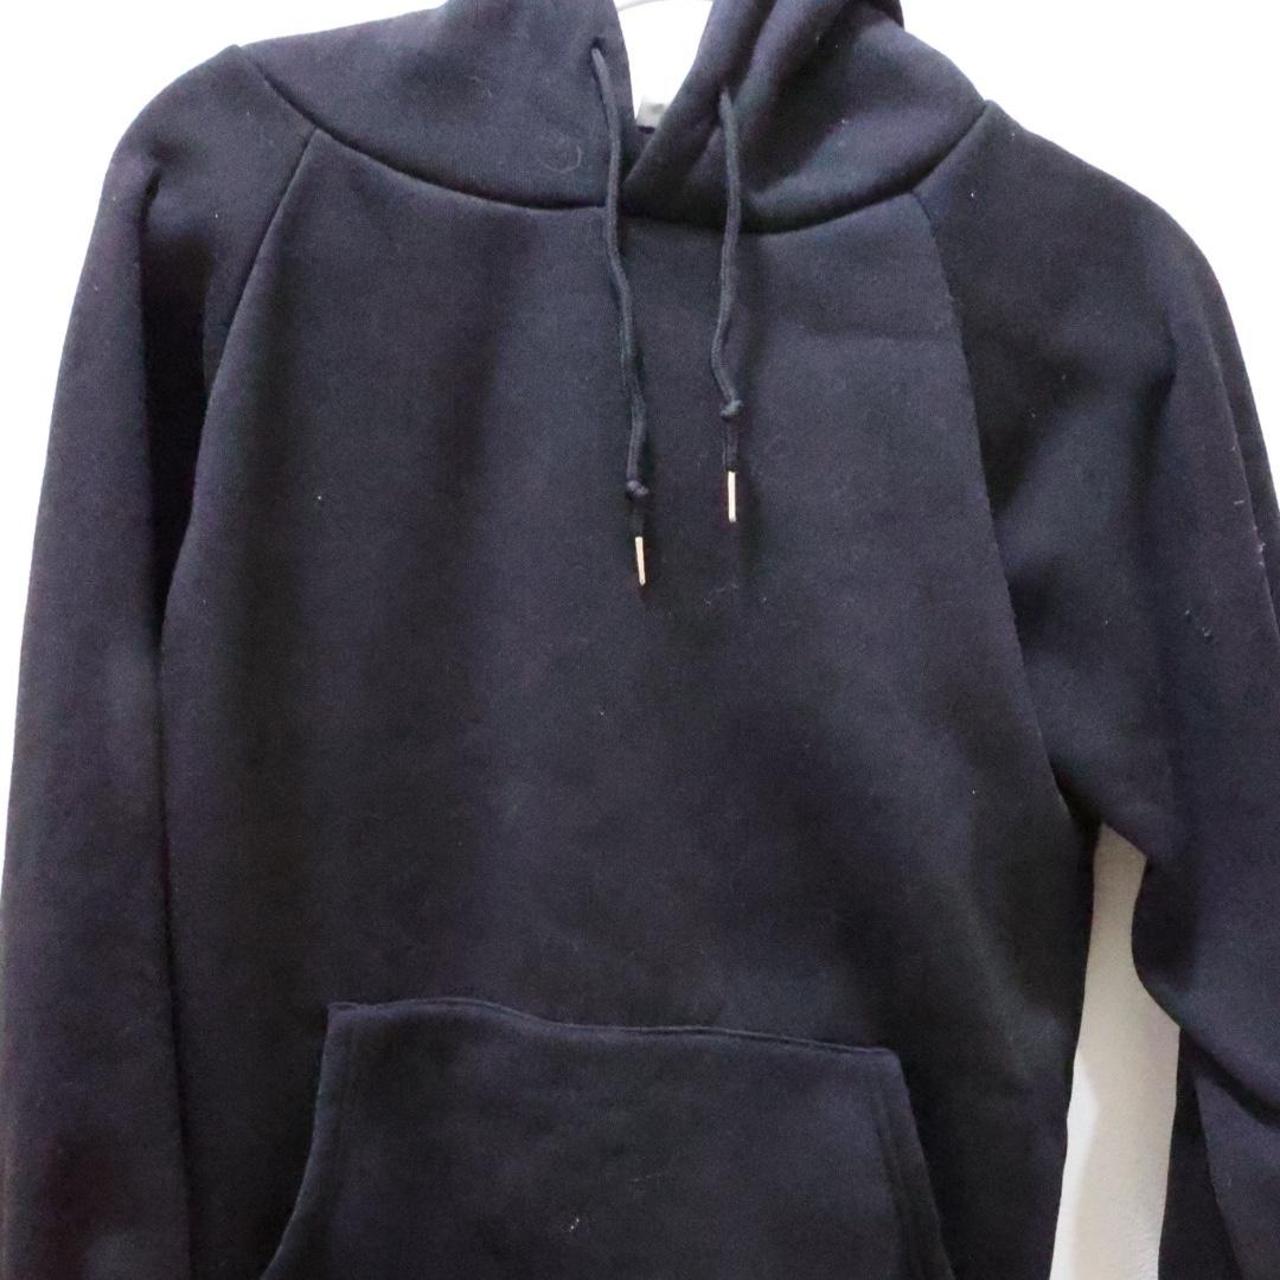 Plain black hoodie NEVER WORN #hoodies #sweatshirts - Depop